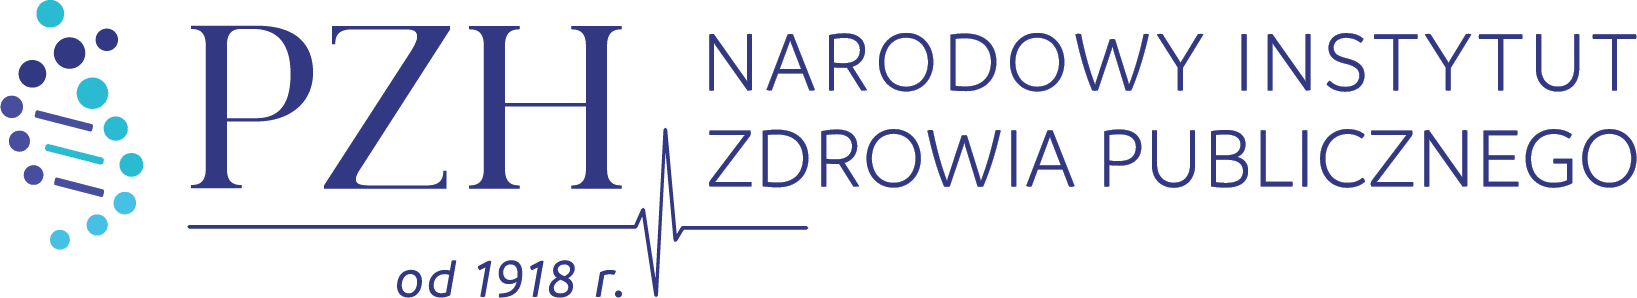 Logo NIZP-PZH